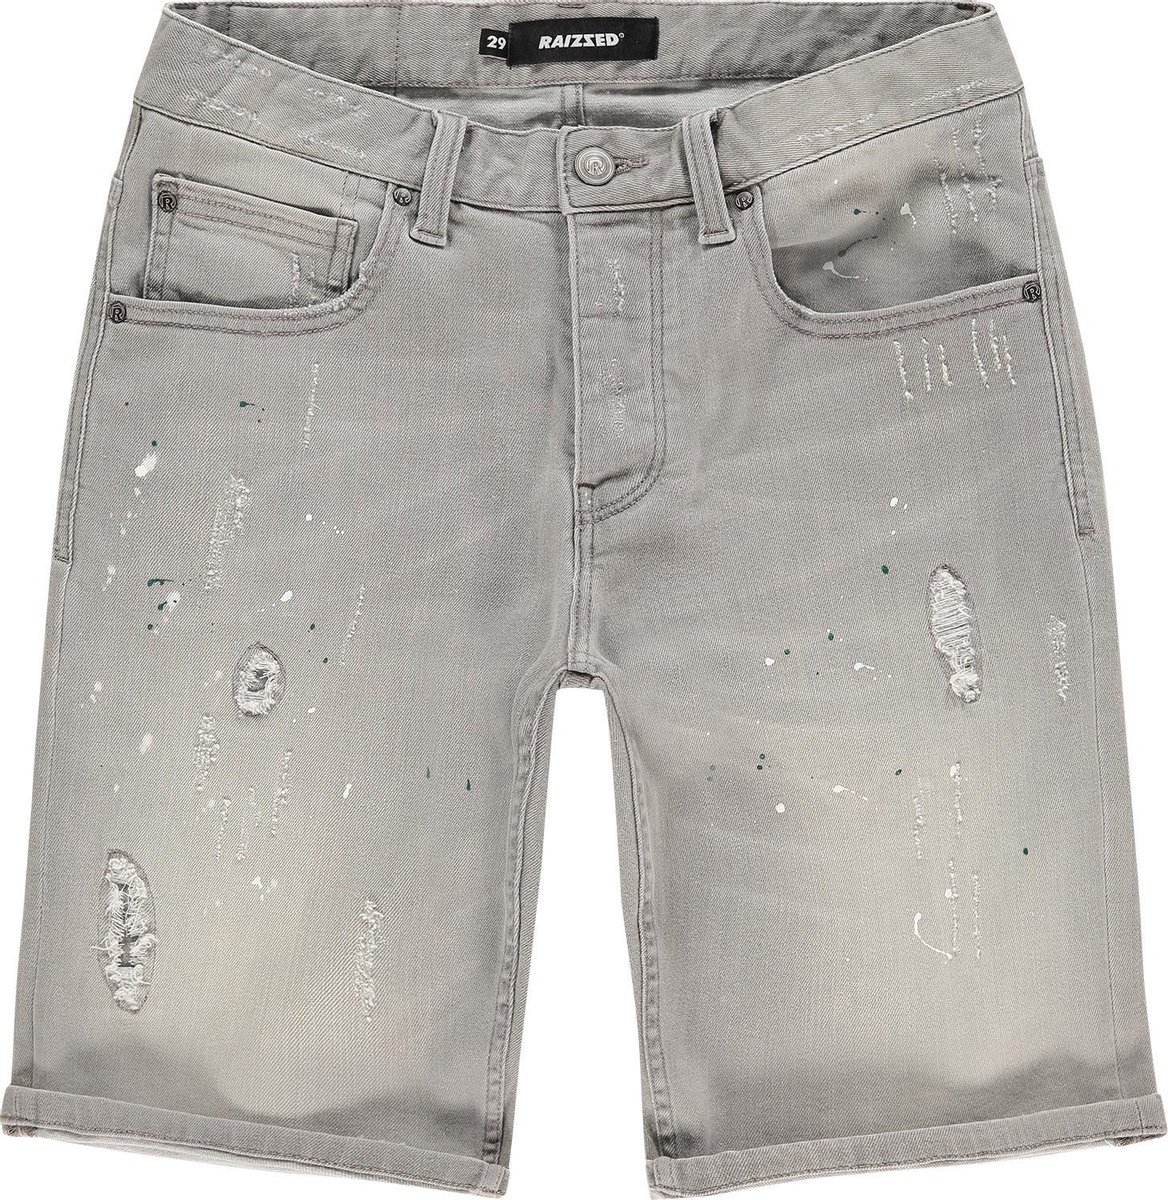 Raizzed Jeans Crest Mannen Jeans - Light Grey Stone - Maat 29